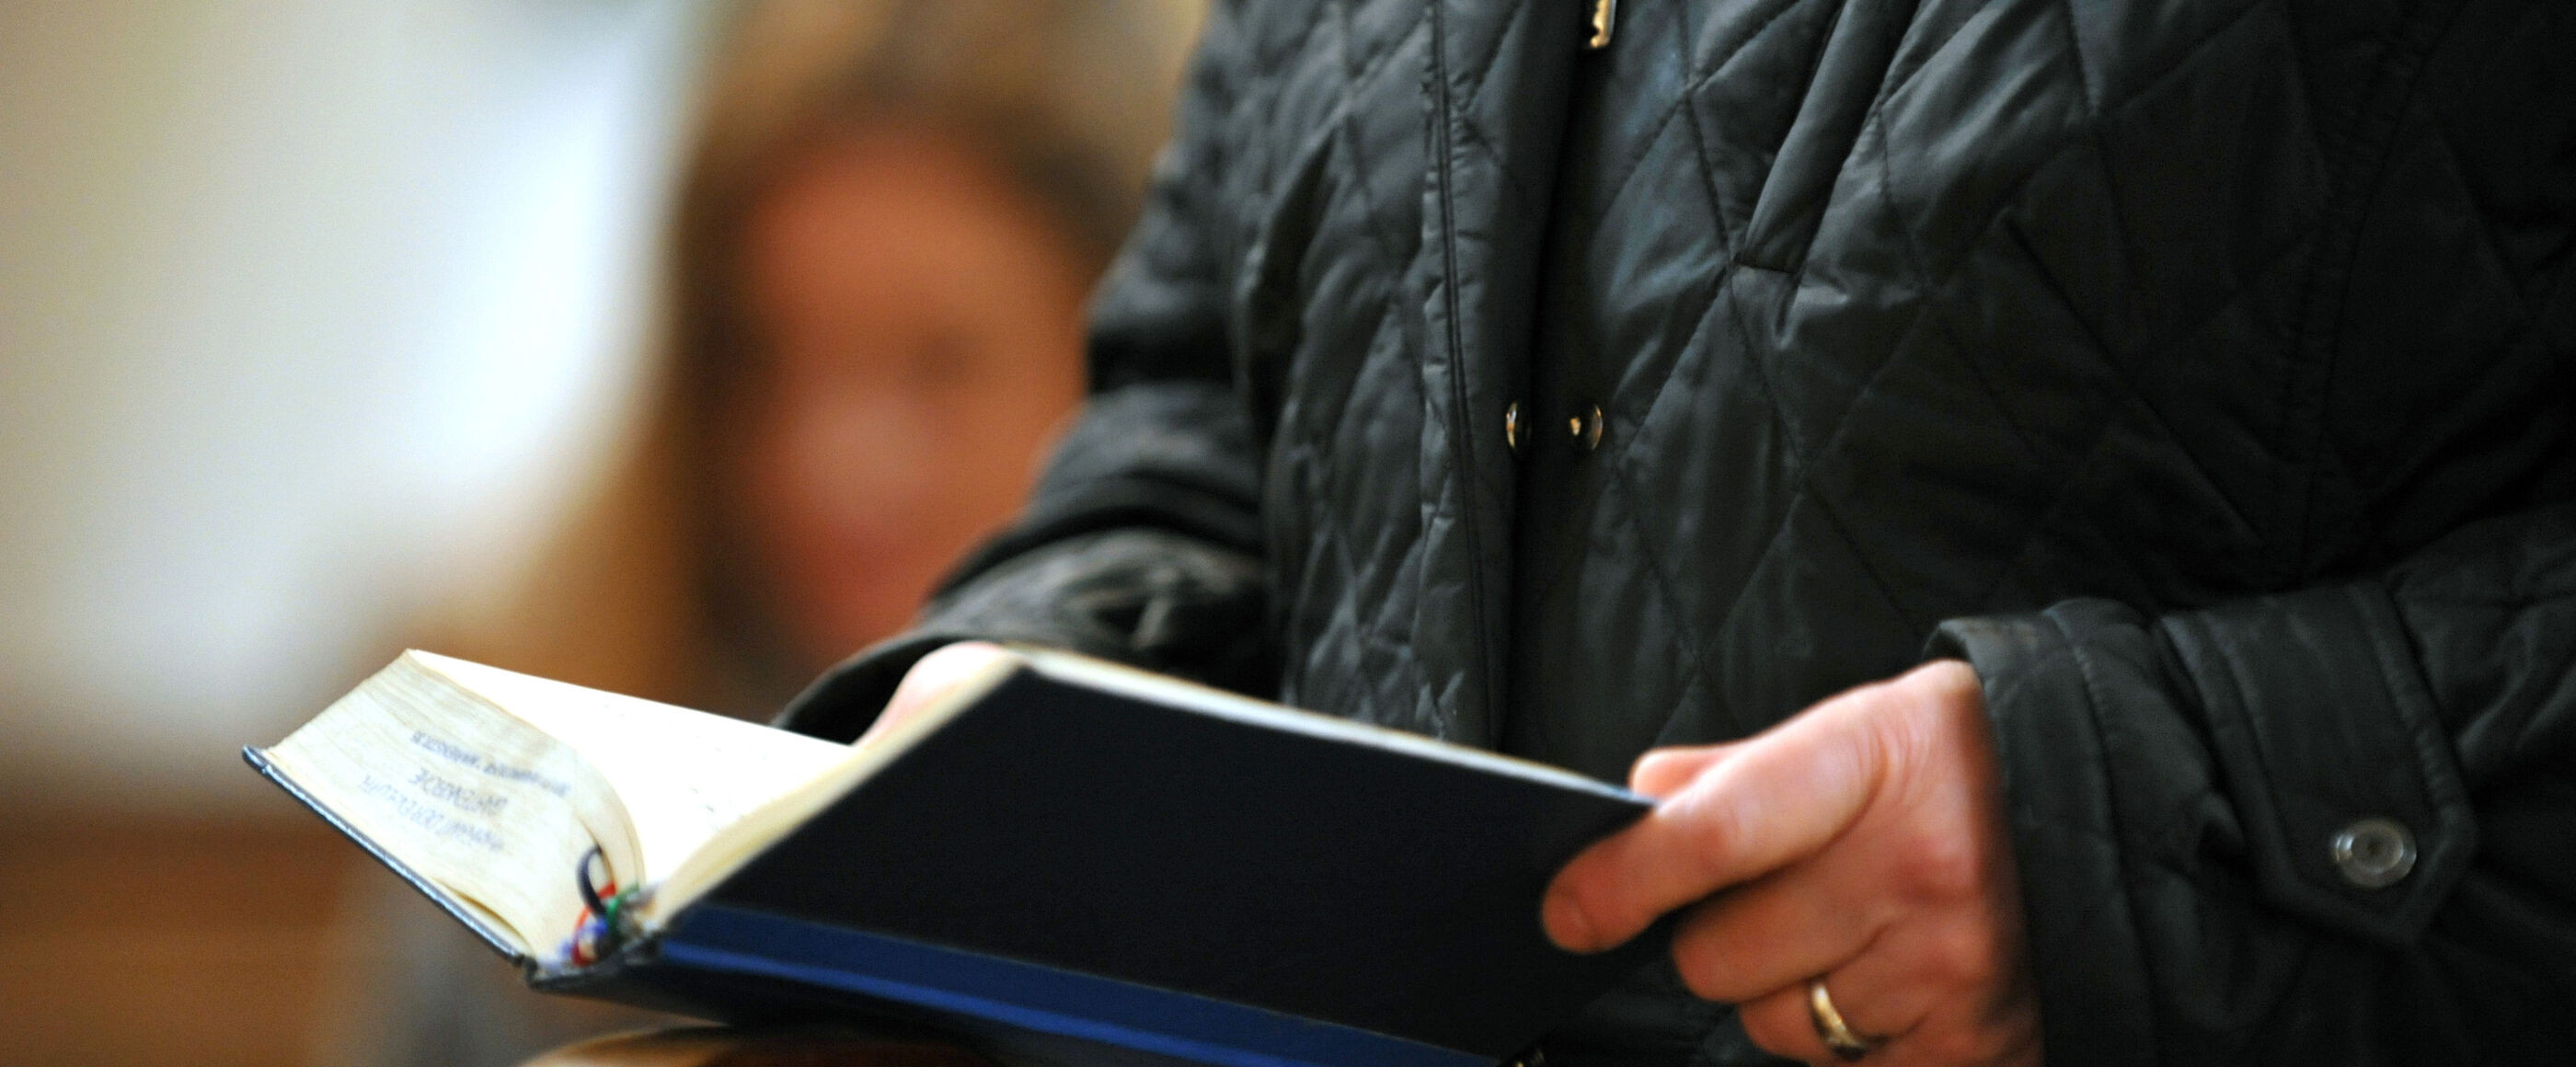 Eine Person hält ein Gesangbuch in der Hand.